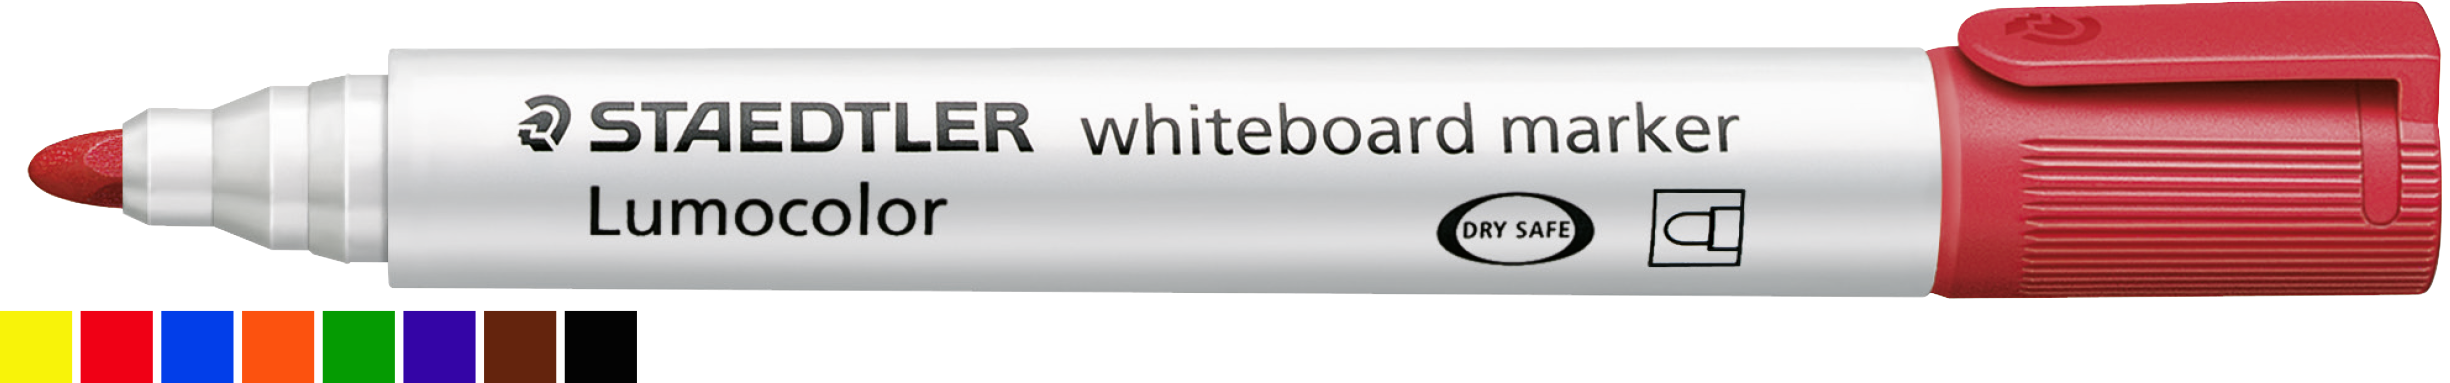 Whiteboardmarker von STAEDTLER